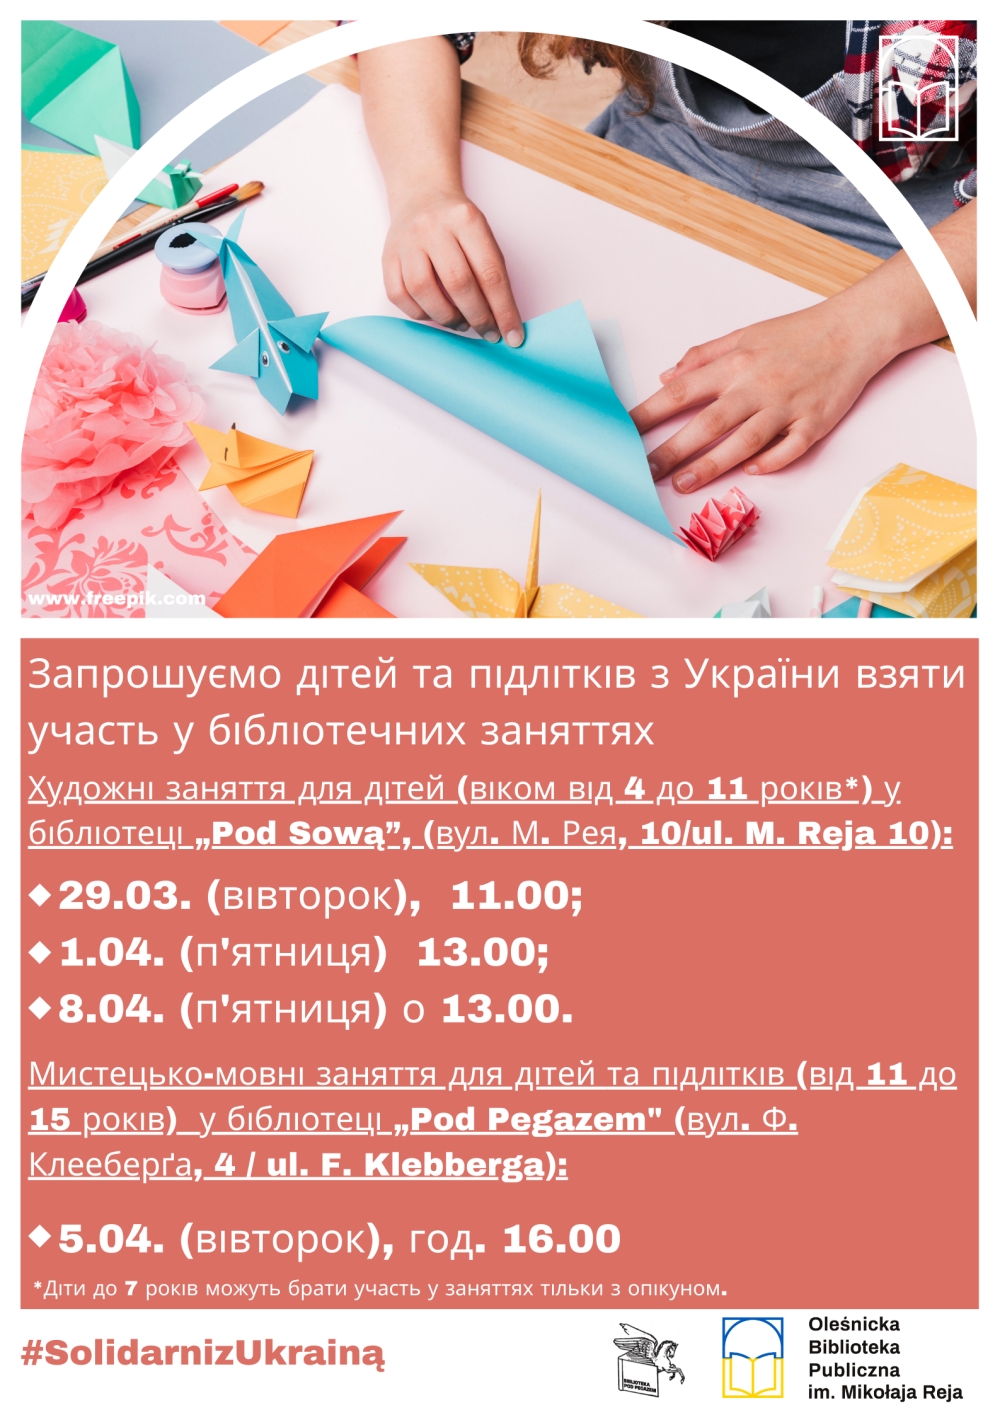 Plakat promujący zajęcia dla dzieci z Ukrainy w języku ukraińskim